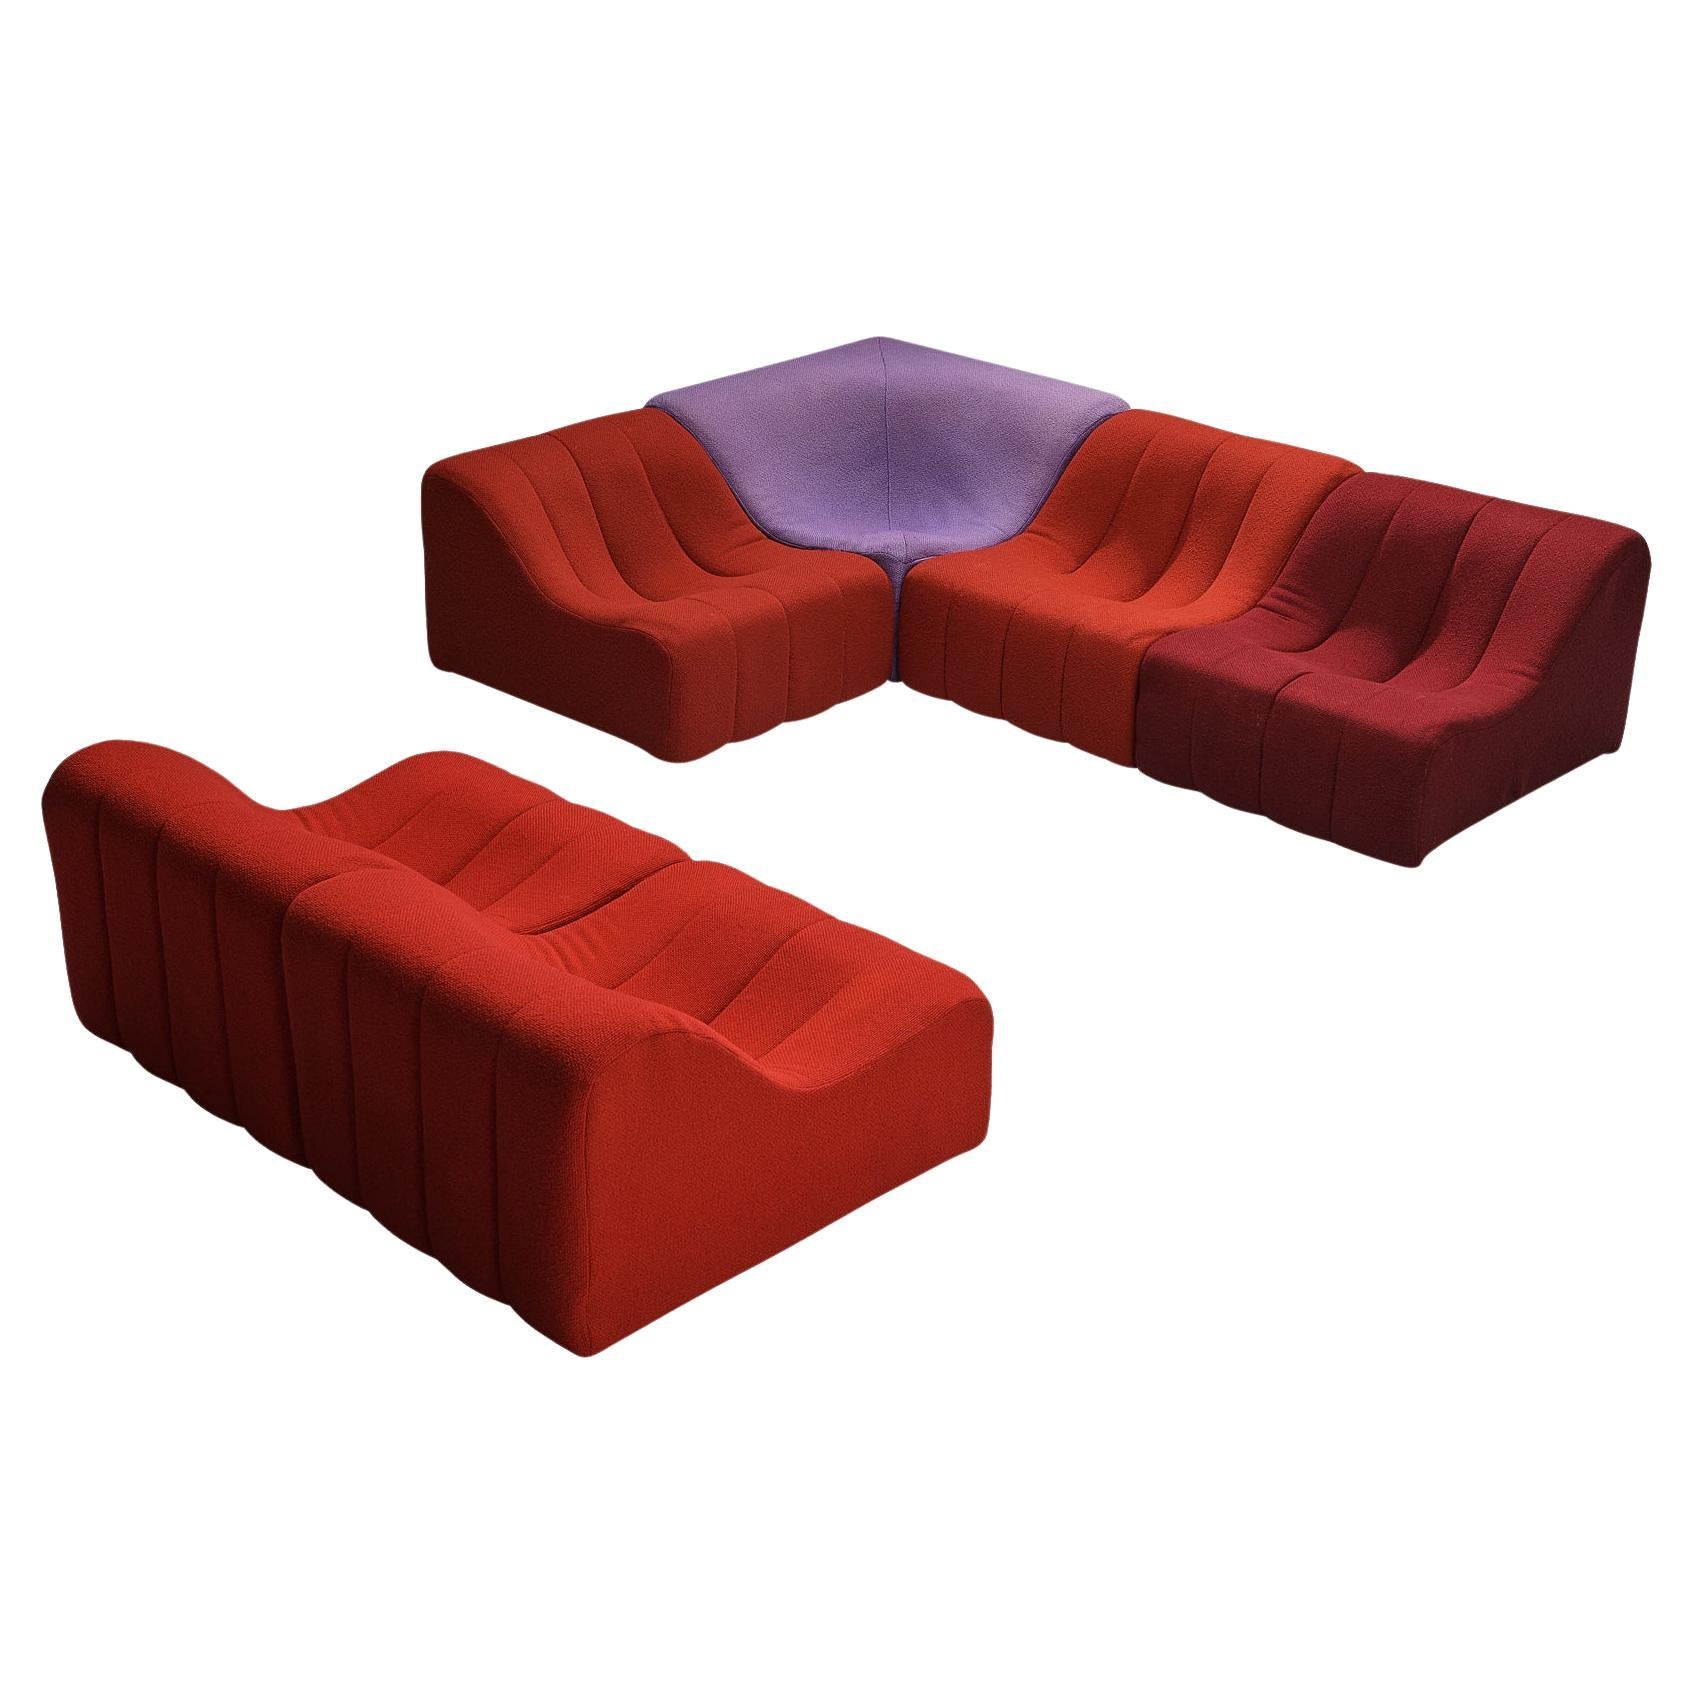 Canapé modulaire « Chromatic » de Kwok Hoi Chan pour Steiner, de couleurs rouge, violet et rouge 